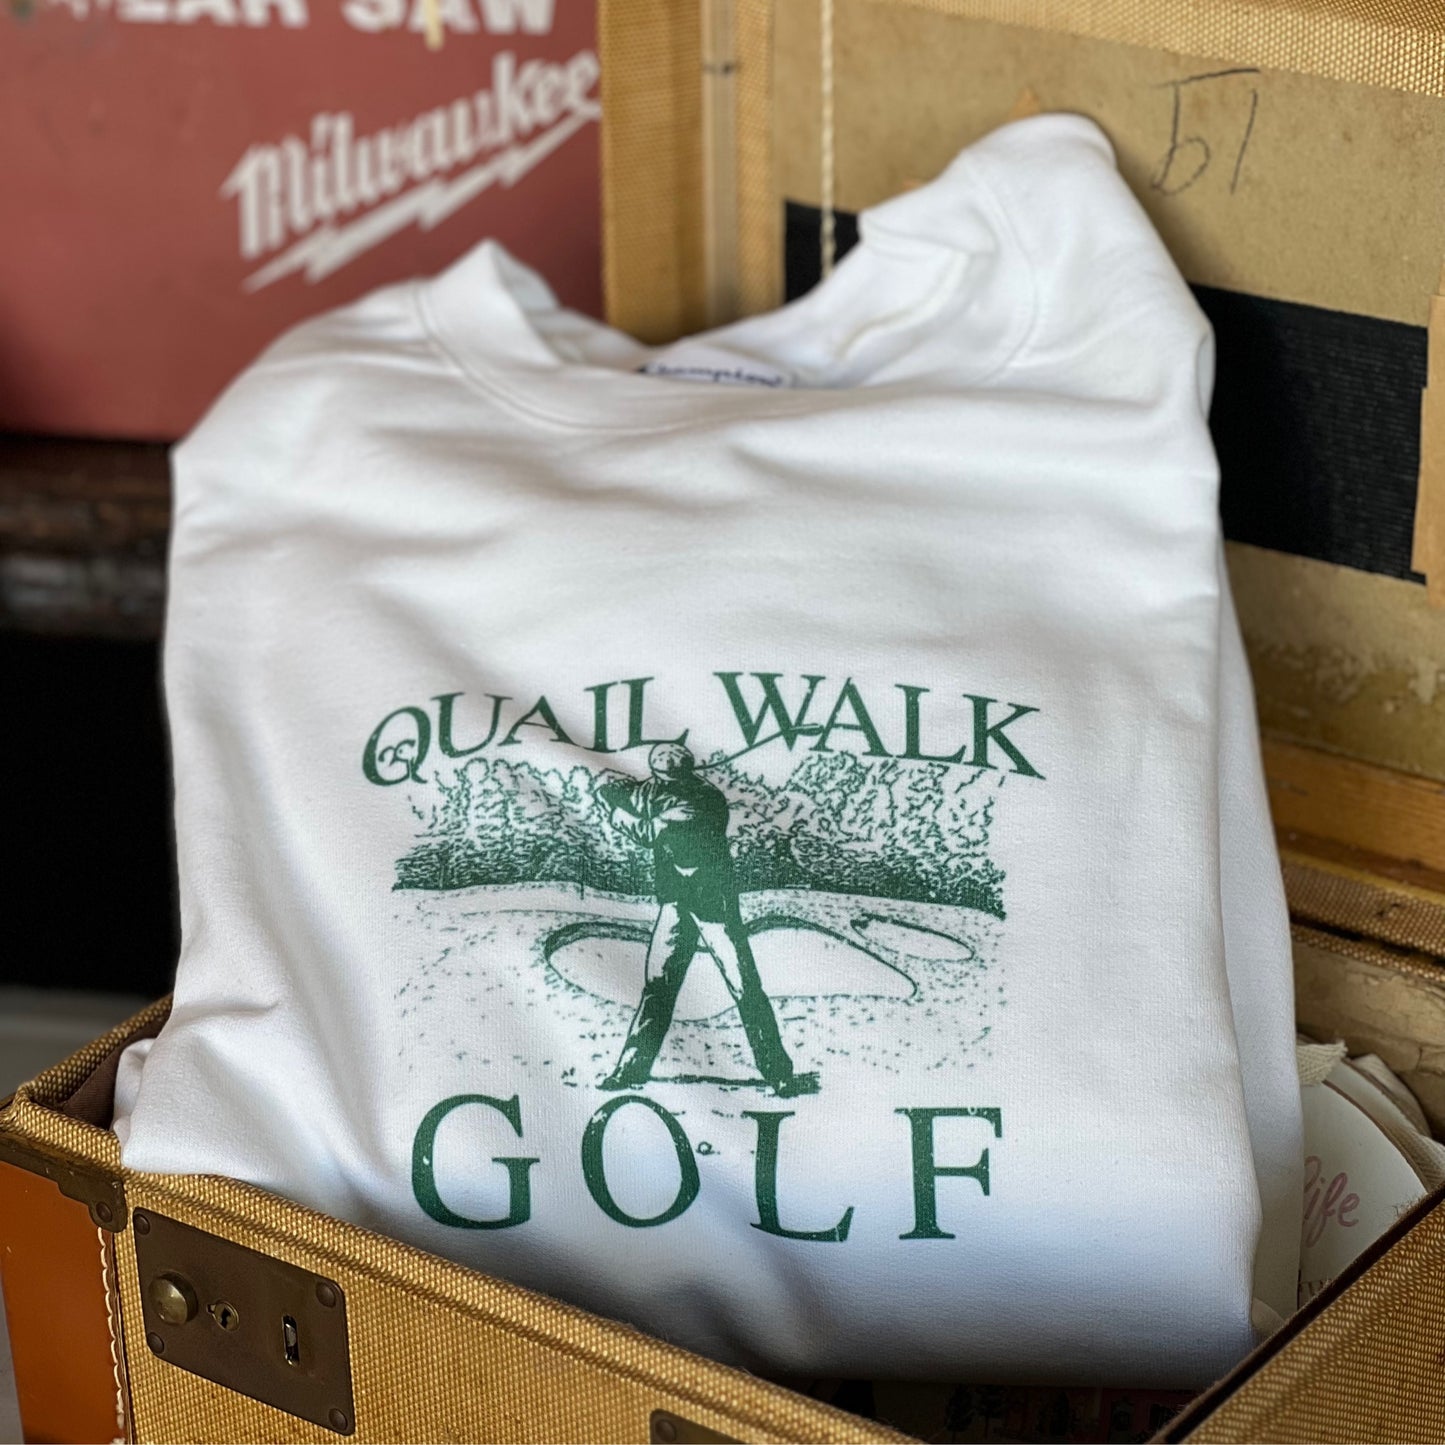 Quail Walk sweatshirt